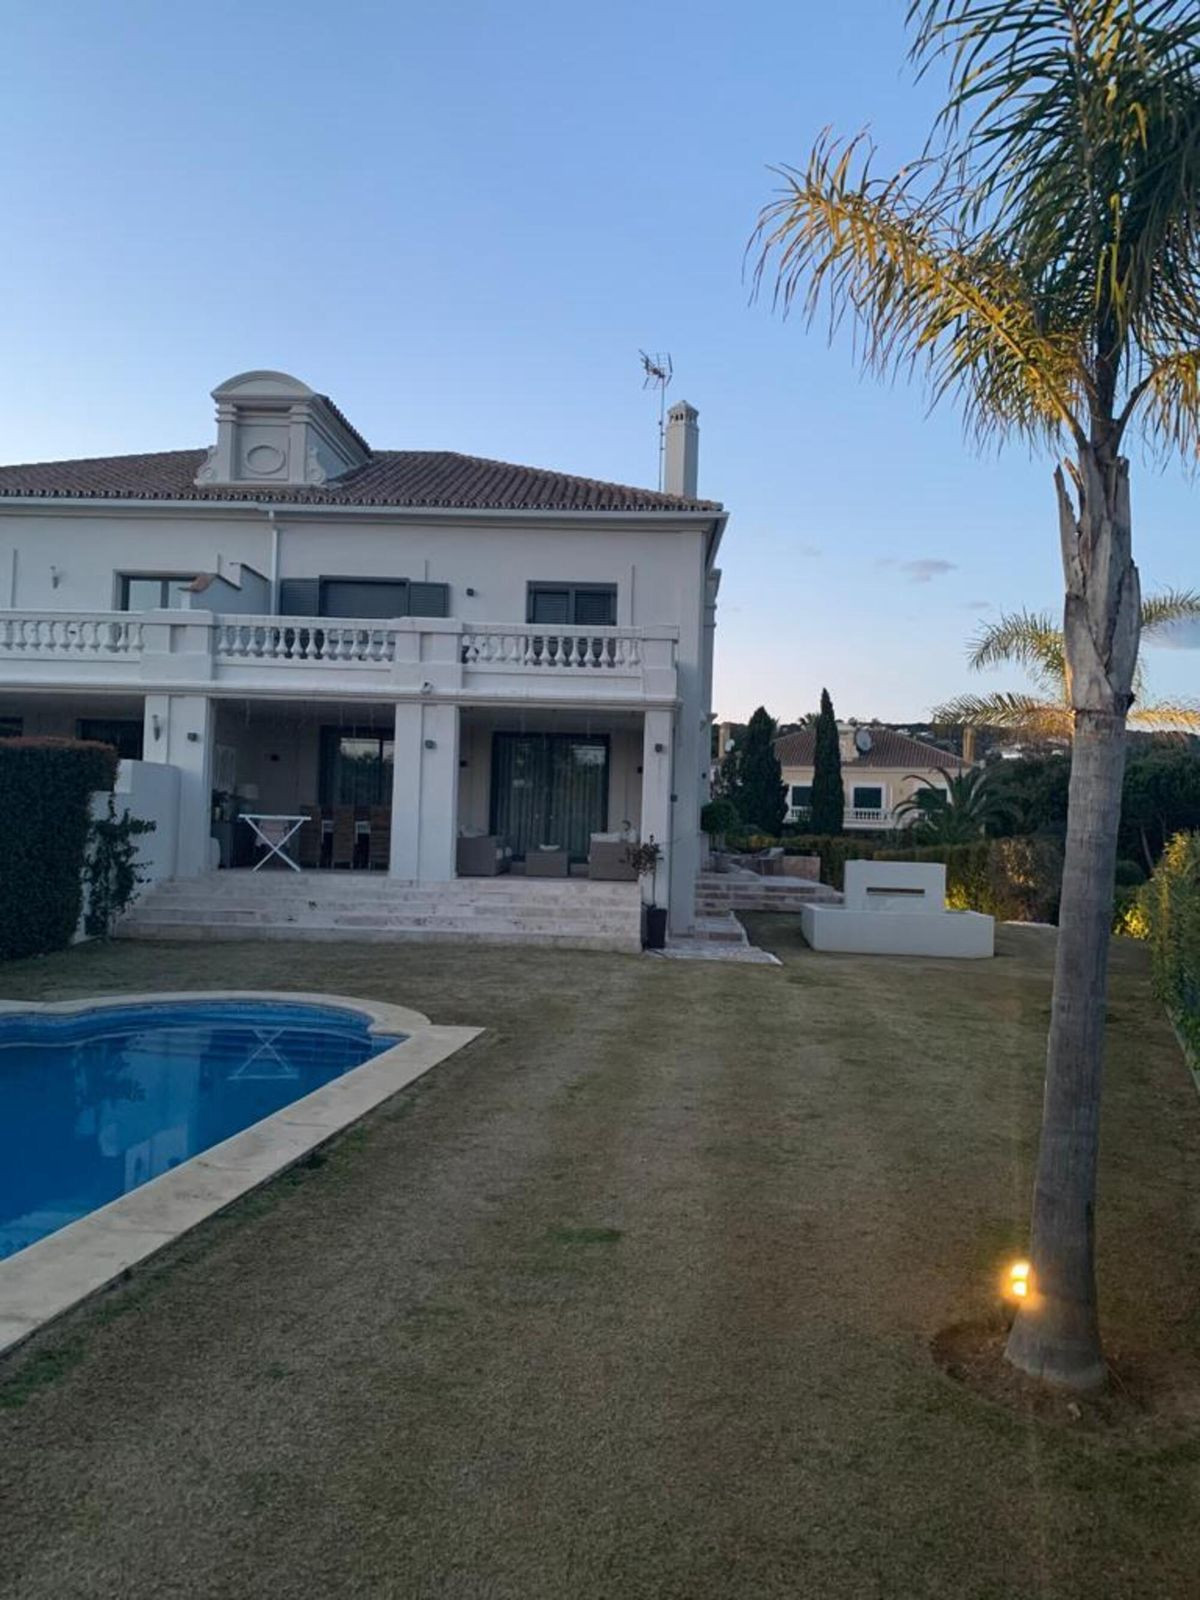 						Villa  Pareada
													en venta 
																			 en Sotogrande Alto
					